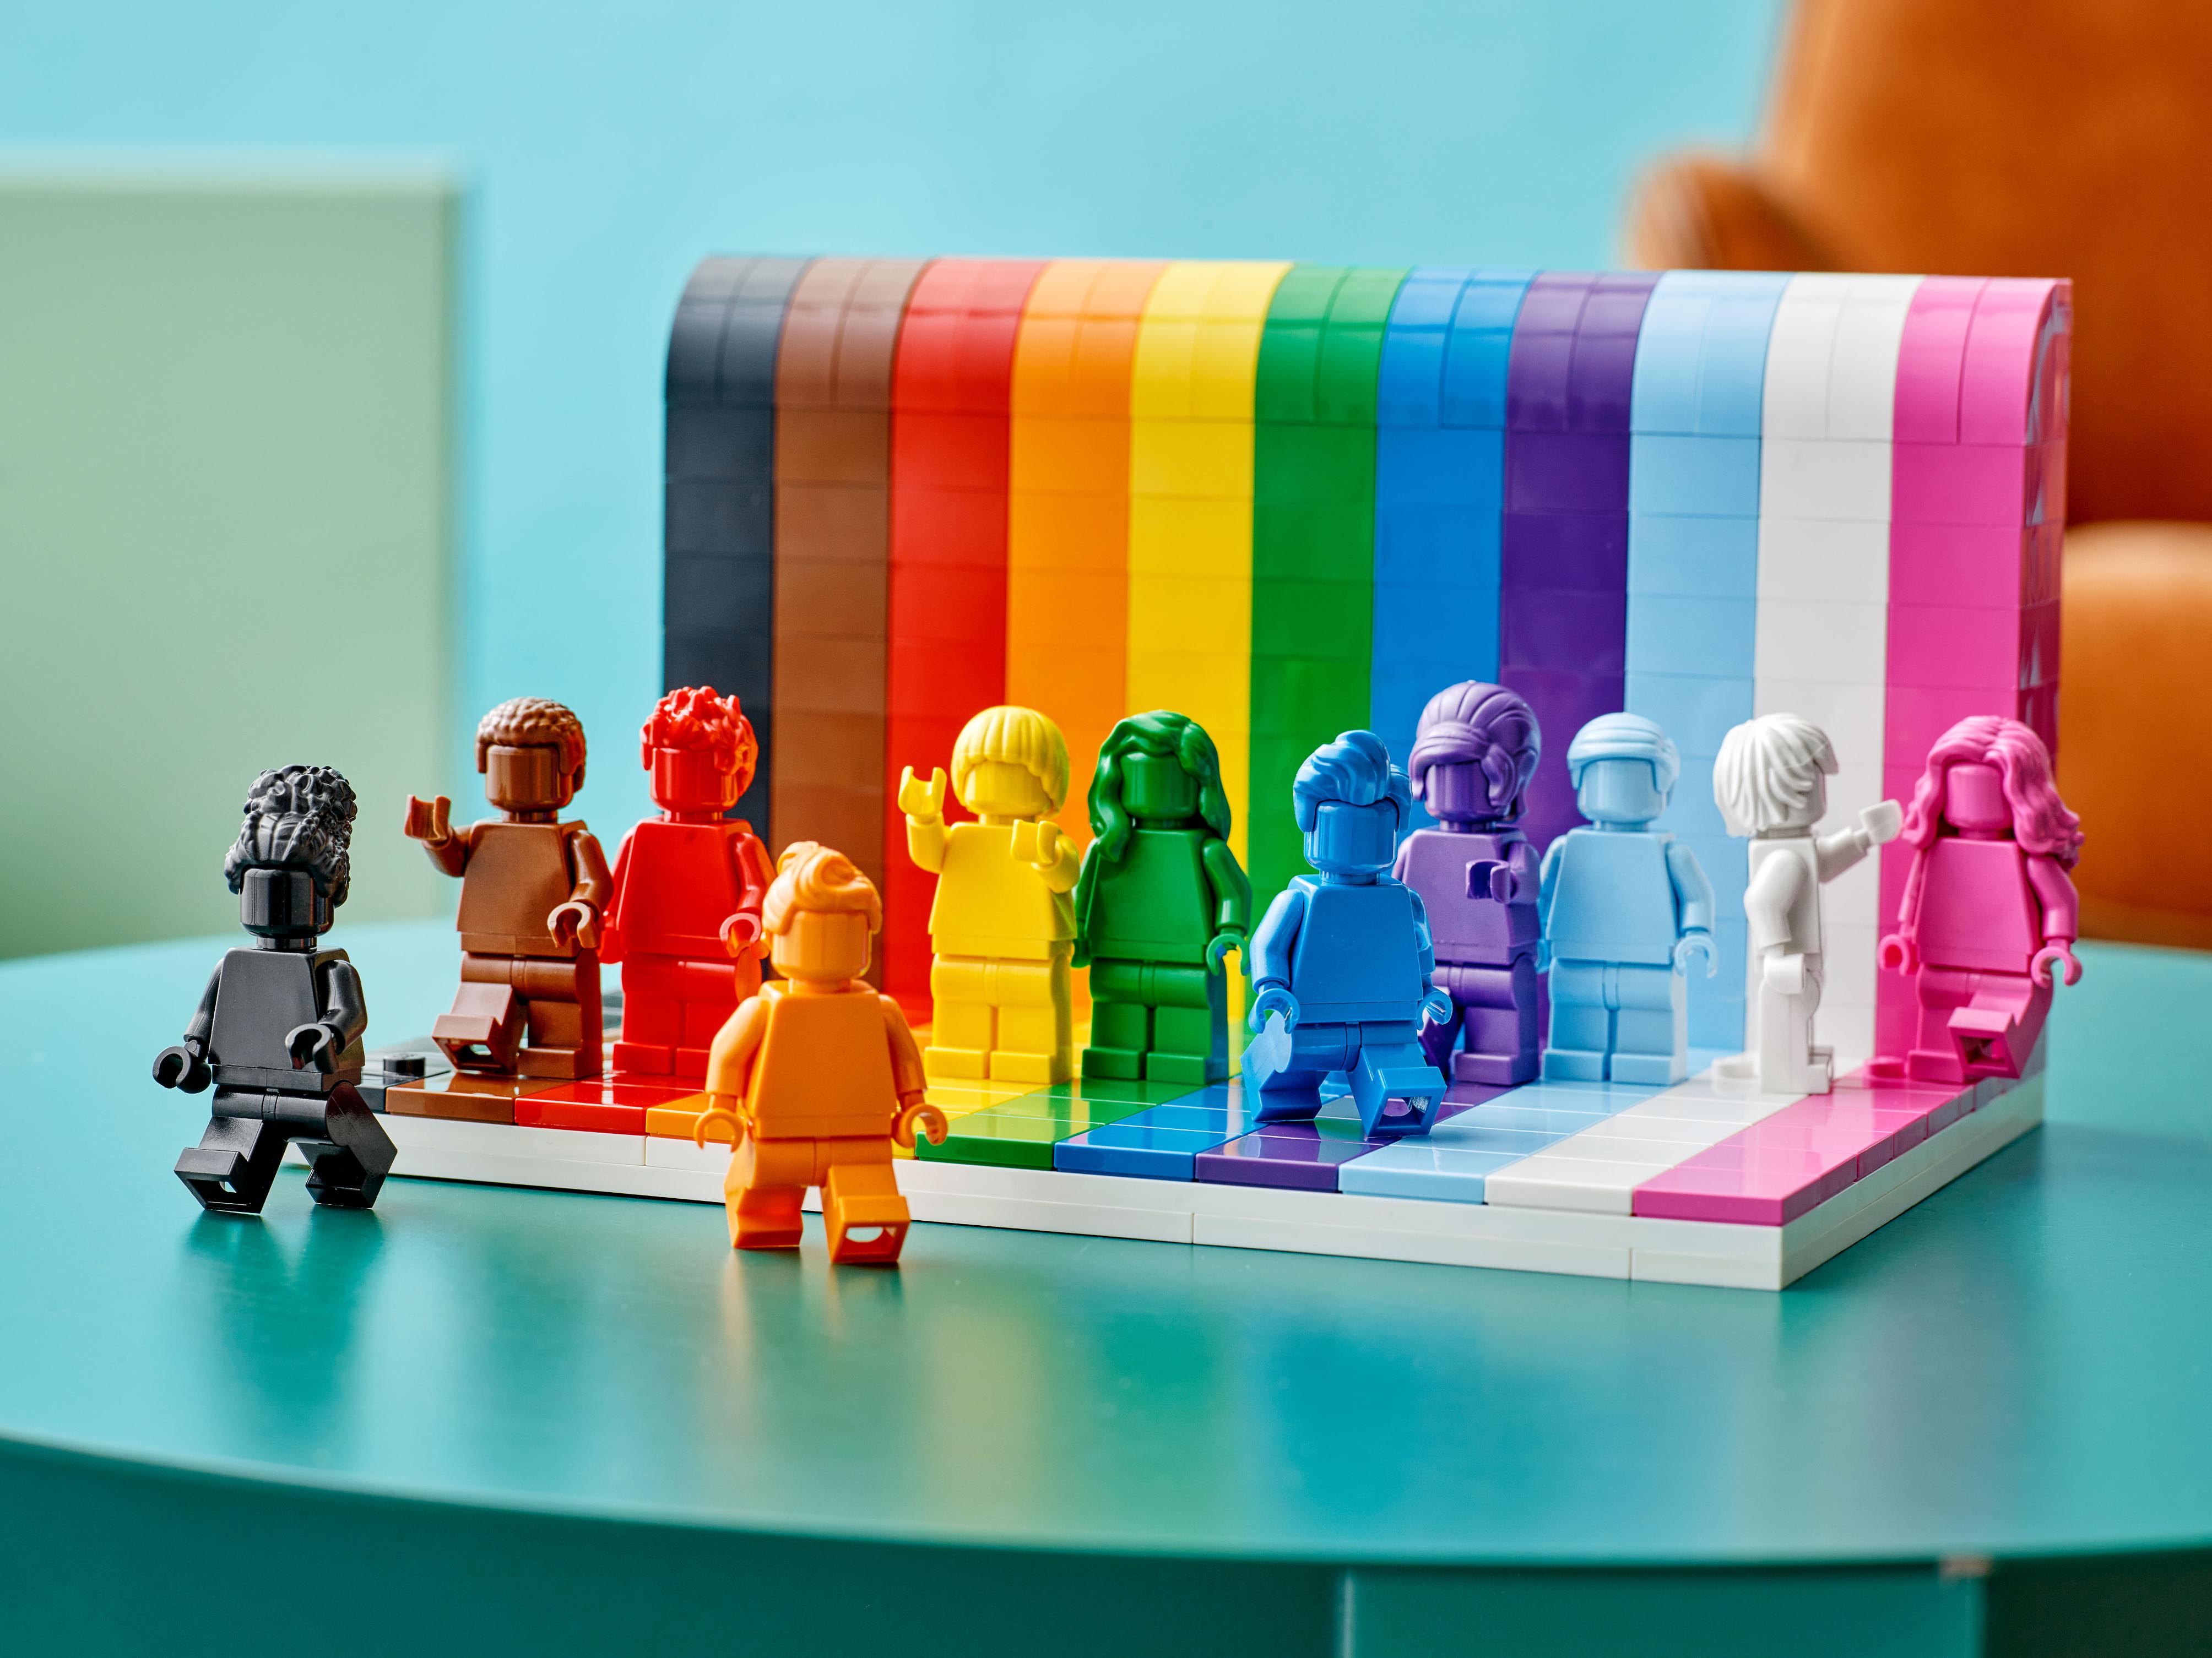 søskende retning Milepæl Lego unveils first LGBTQ set ahead of Pride Month - CNN Style